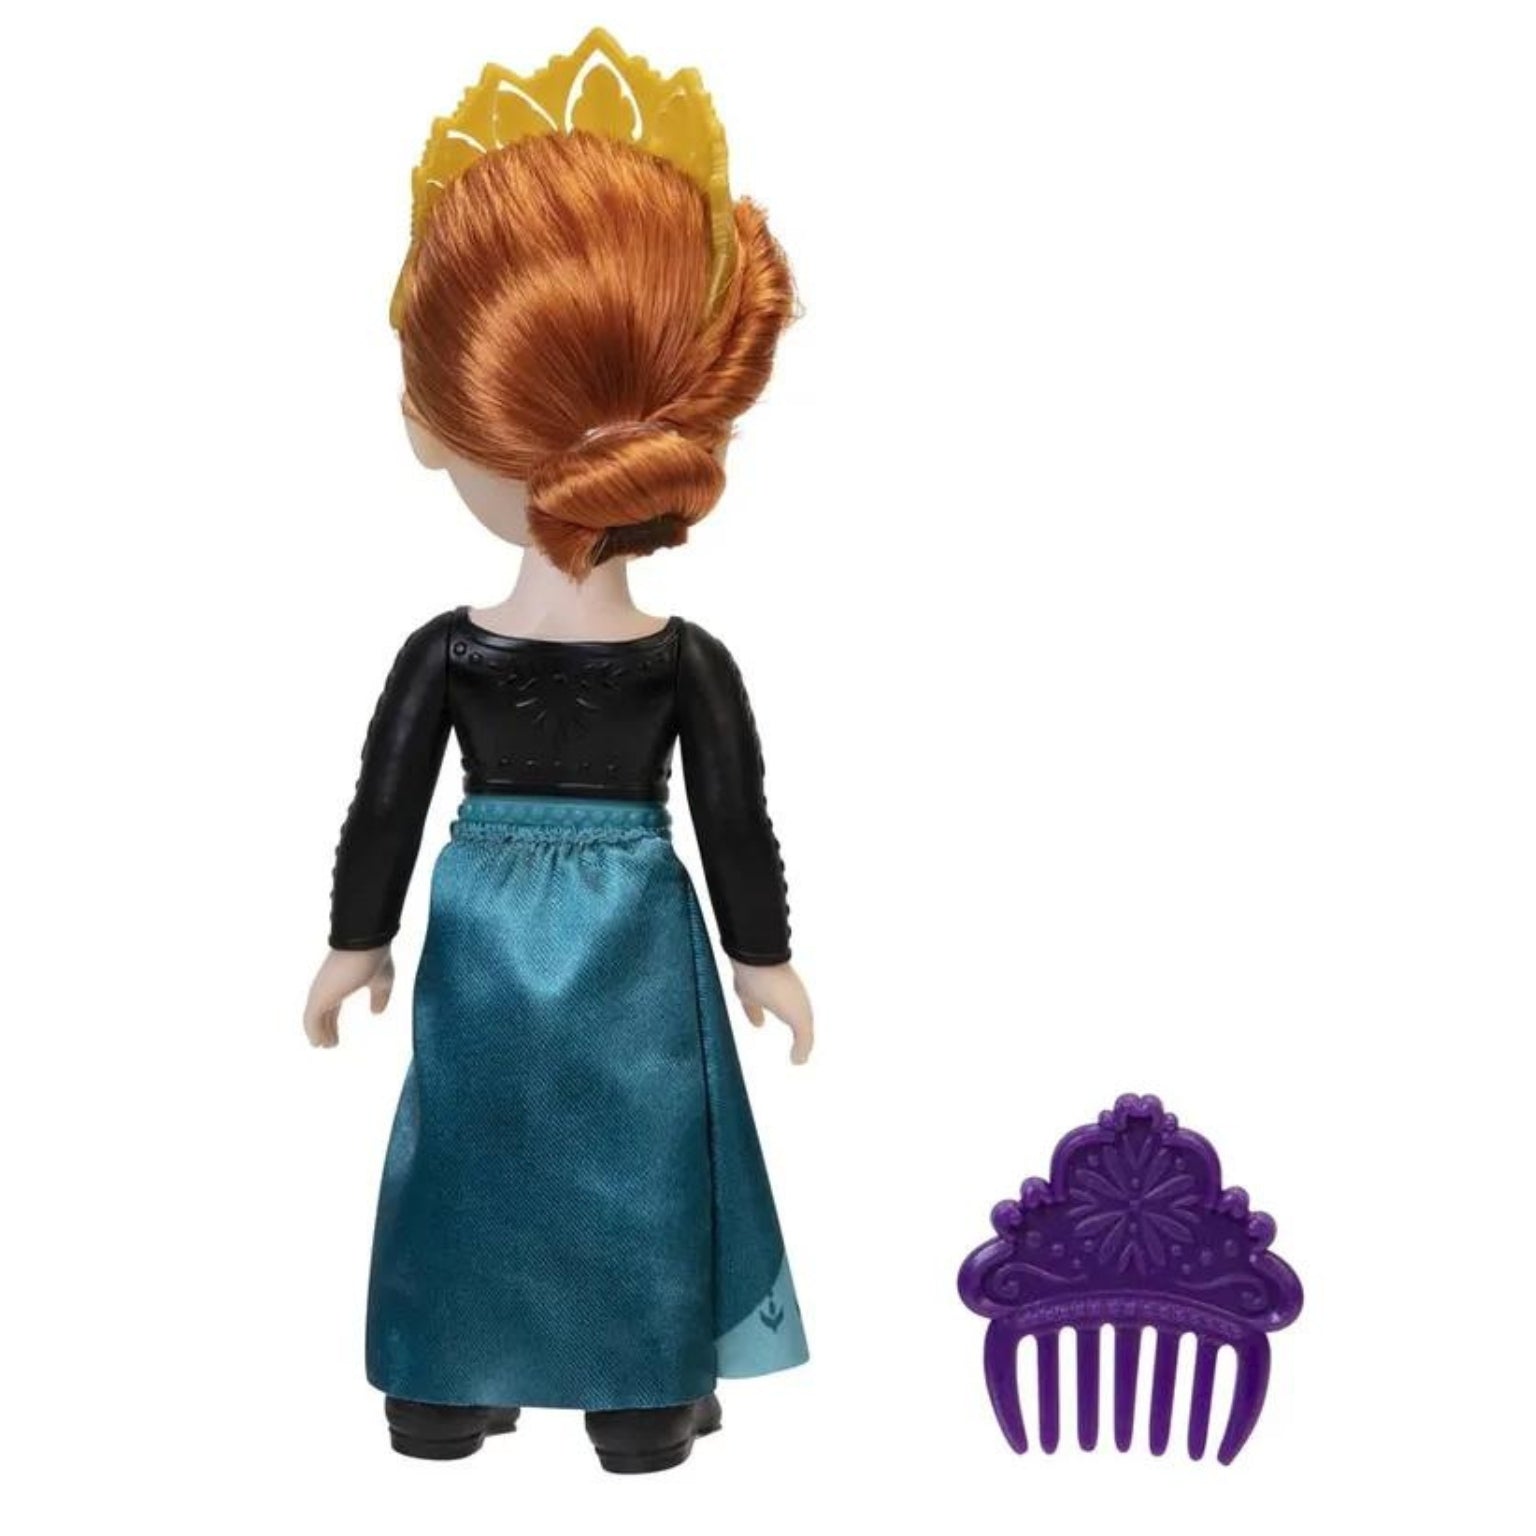 Boneca Princesa Disney – Anna com coroa